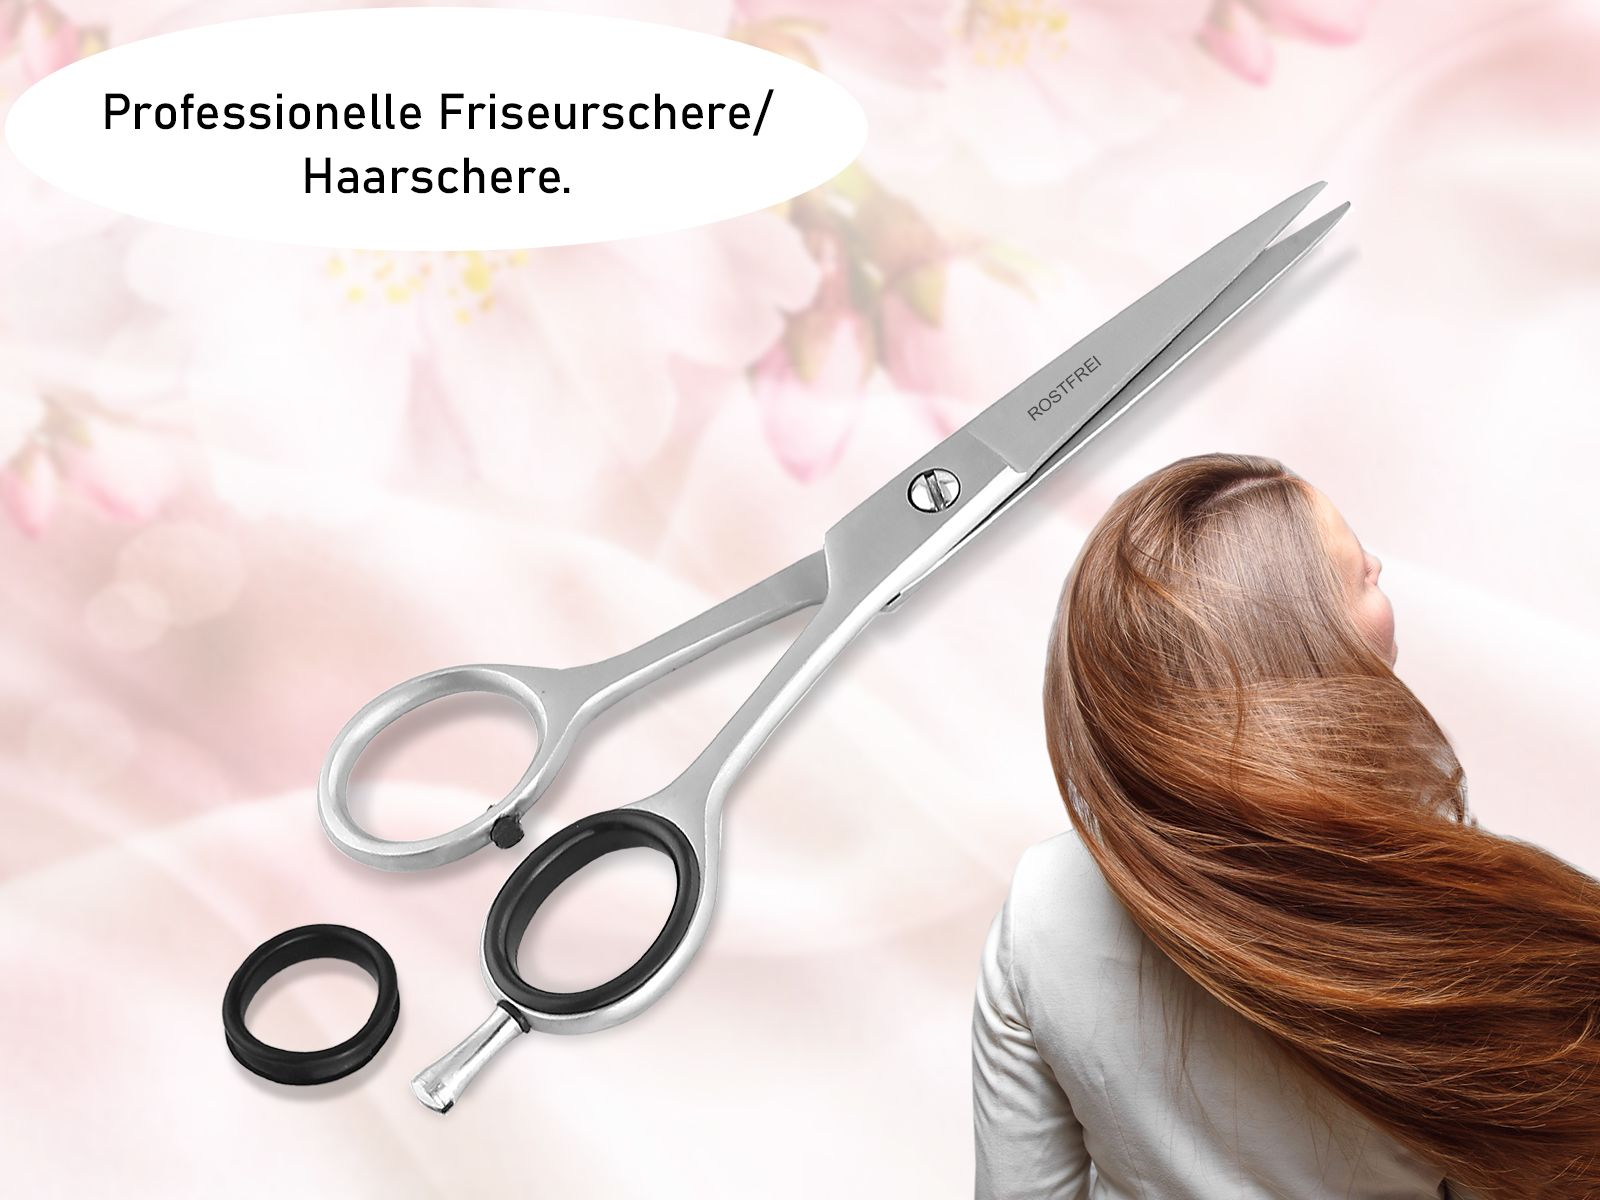 cm Rostfrei Profi Haarschneideschere mit Friseurschere Edelstahl 13,97 Scharfer perfekten Schneide einen für 81352744 Haarschere Haarschnitt